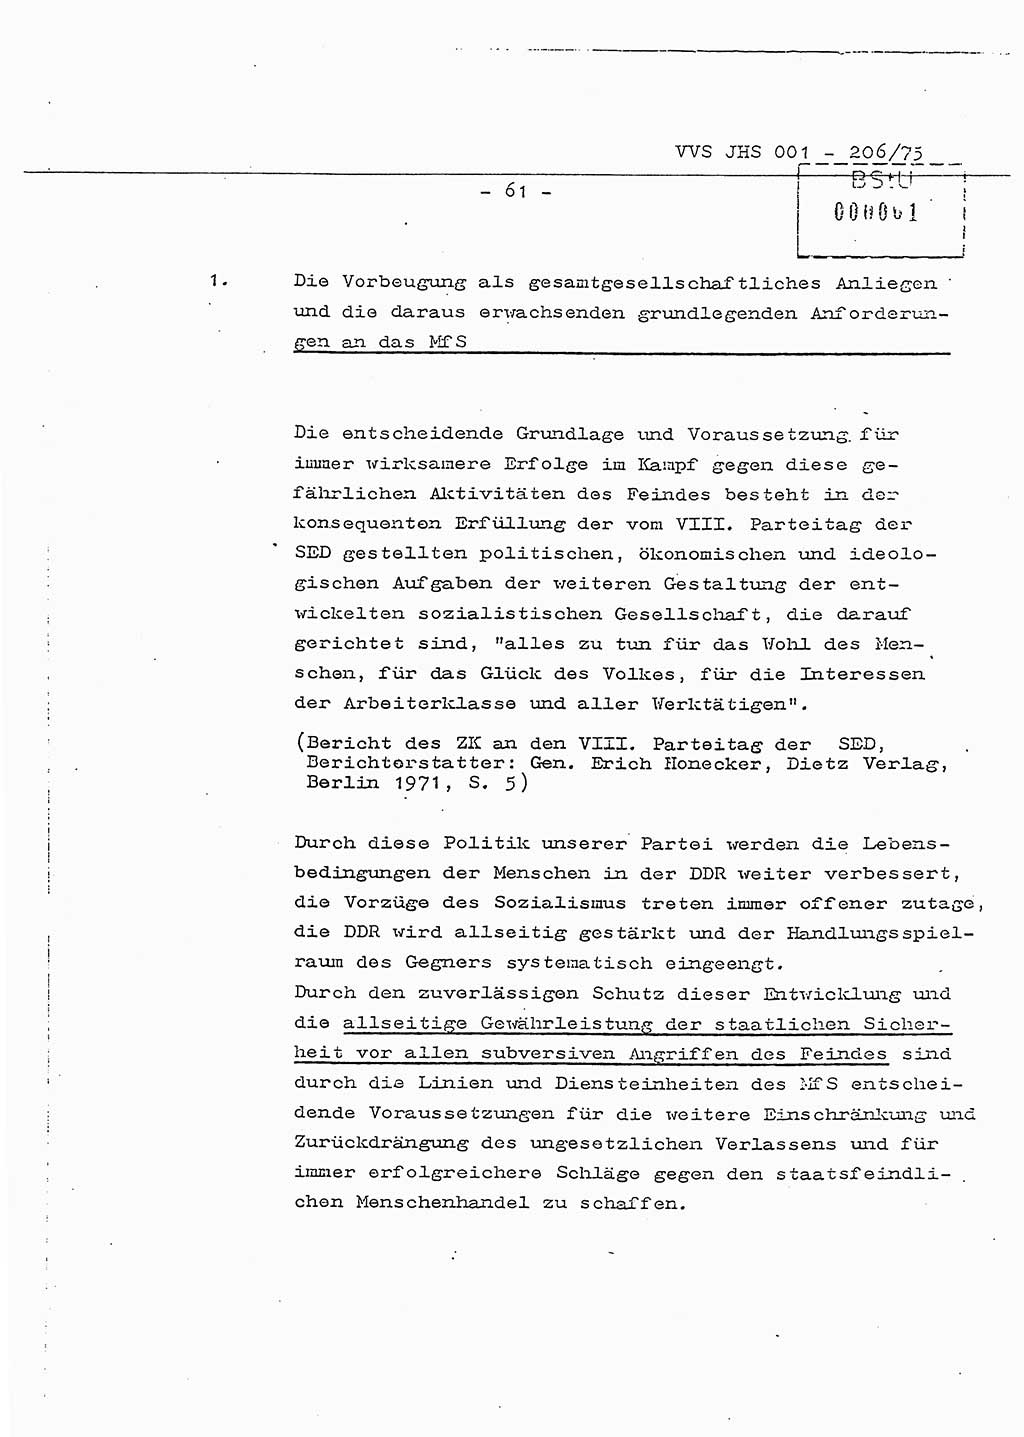 Dissertation Generalmajor Manfred Hummitzsch (Leiter der BV Leipzig), Generalmajor Heinz Fiedler (HA Ⅵ), Oberst Rolf Fister (HA Ⅸ), Ministerium für Staatssicherheit (MfS) [Deutsche Demokratische Republik (DDR)], Juristische Hochschule (JHS), Vertrauliche Verschlußsache (VVS) 001-206/75, Potsdam 1975, Seite 61 (Diss. MfS DDR JHS VVS 001-206/75 1975, S. 61)